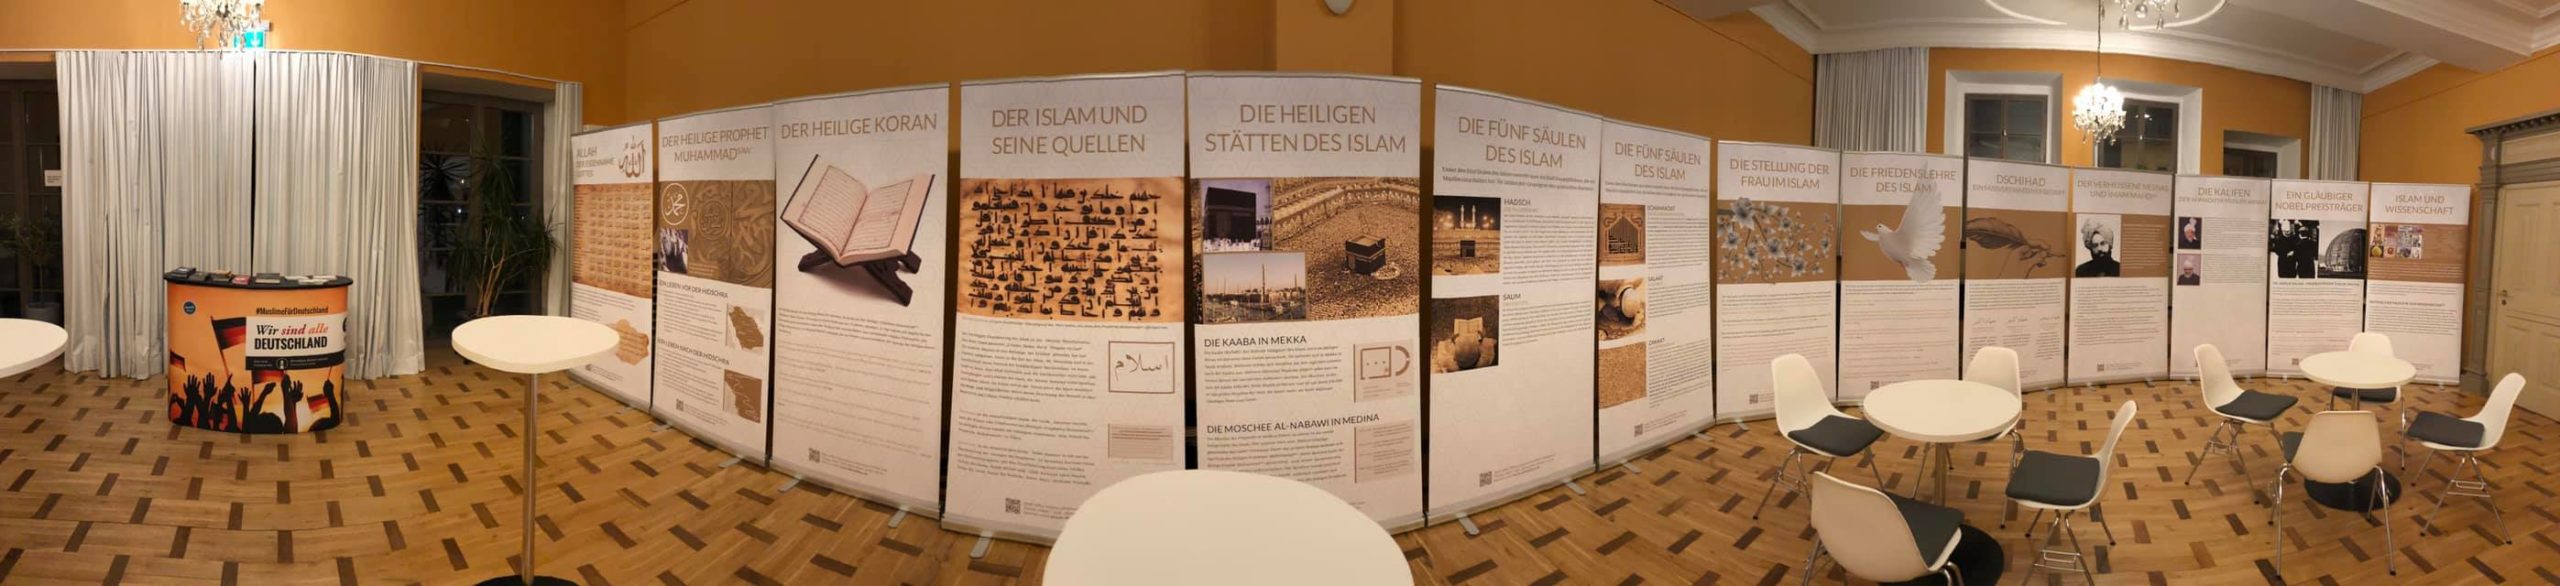 Informationstafel in Erfurt der muslimischen Ahmadiyya-Gemeinde - Autor Wolle Ing